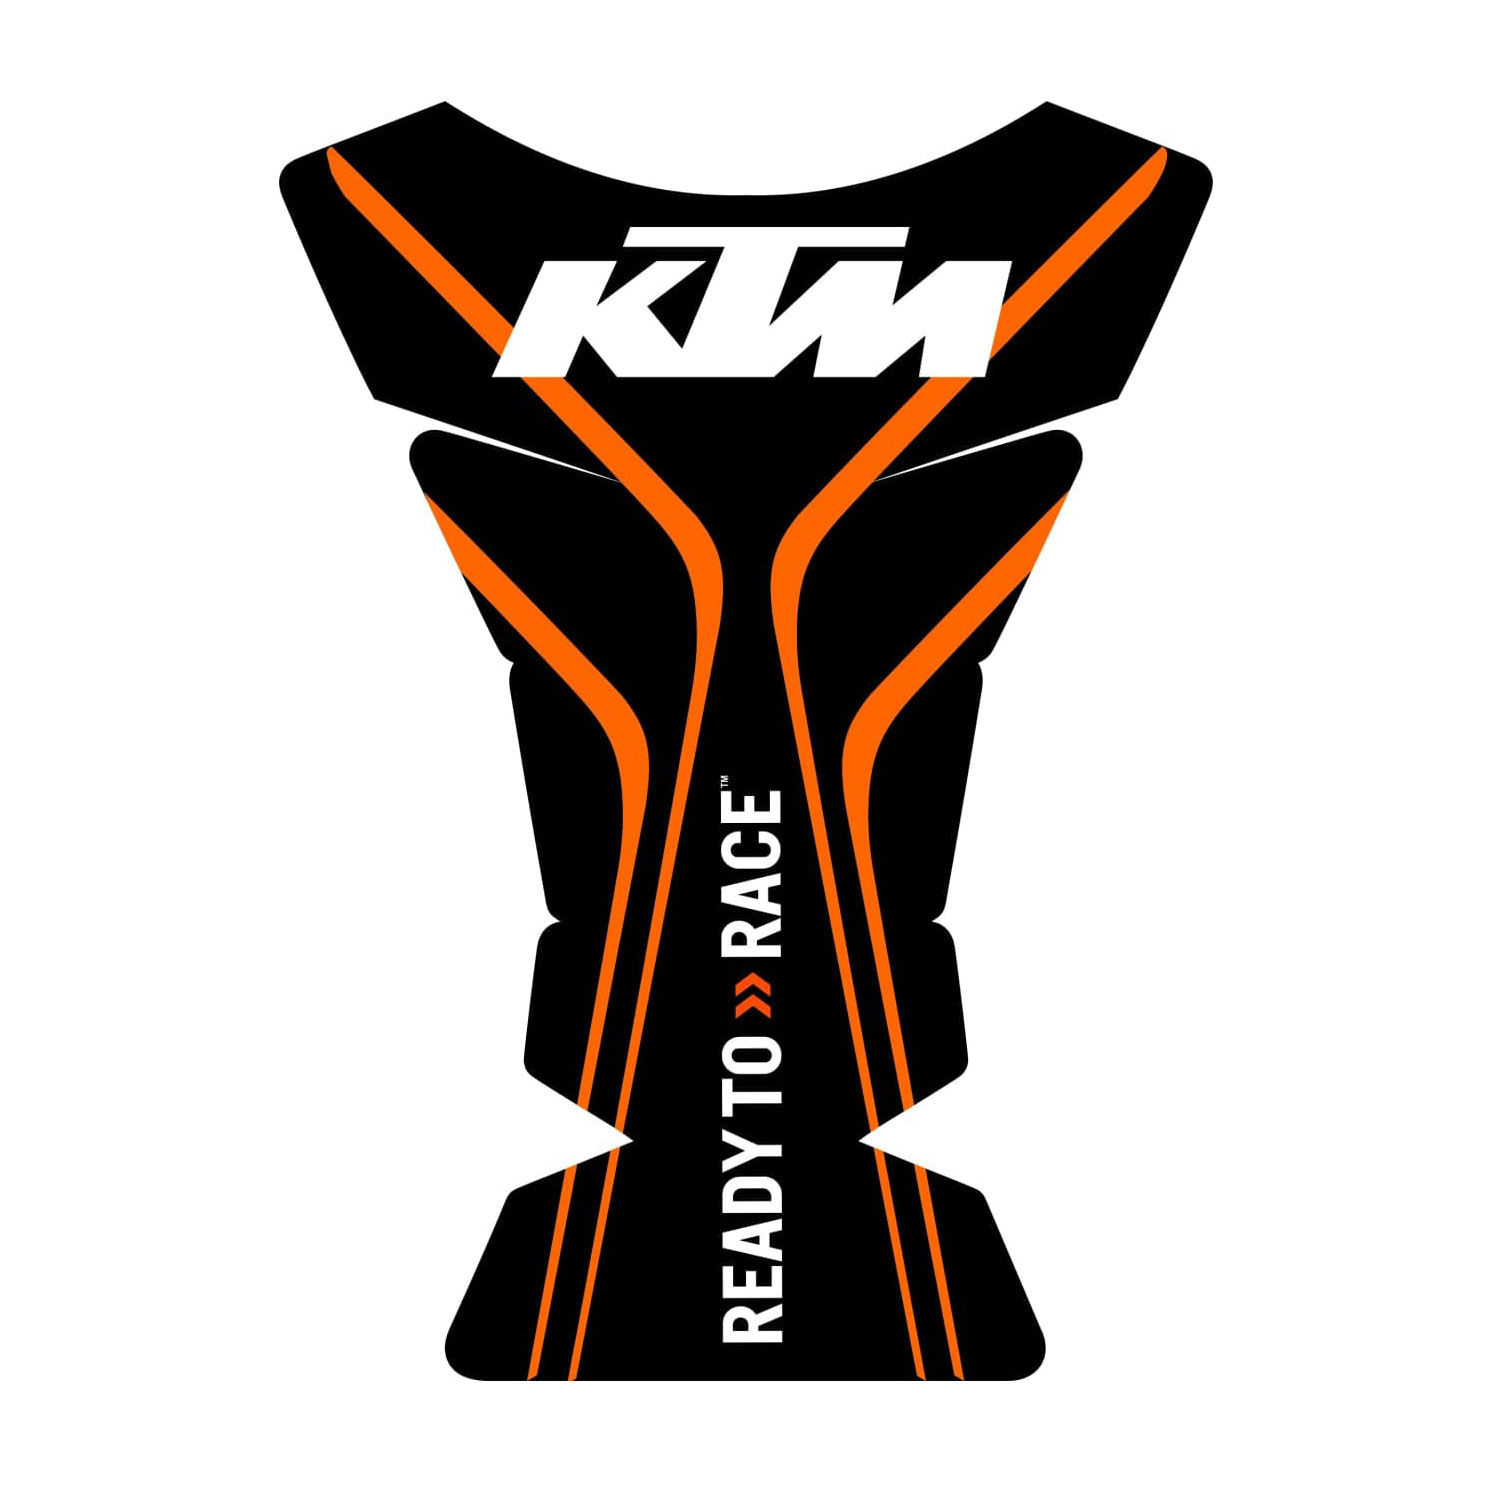 برچسب باک موتور سیکلت کی تی ام مدل KTM-T